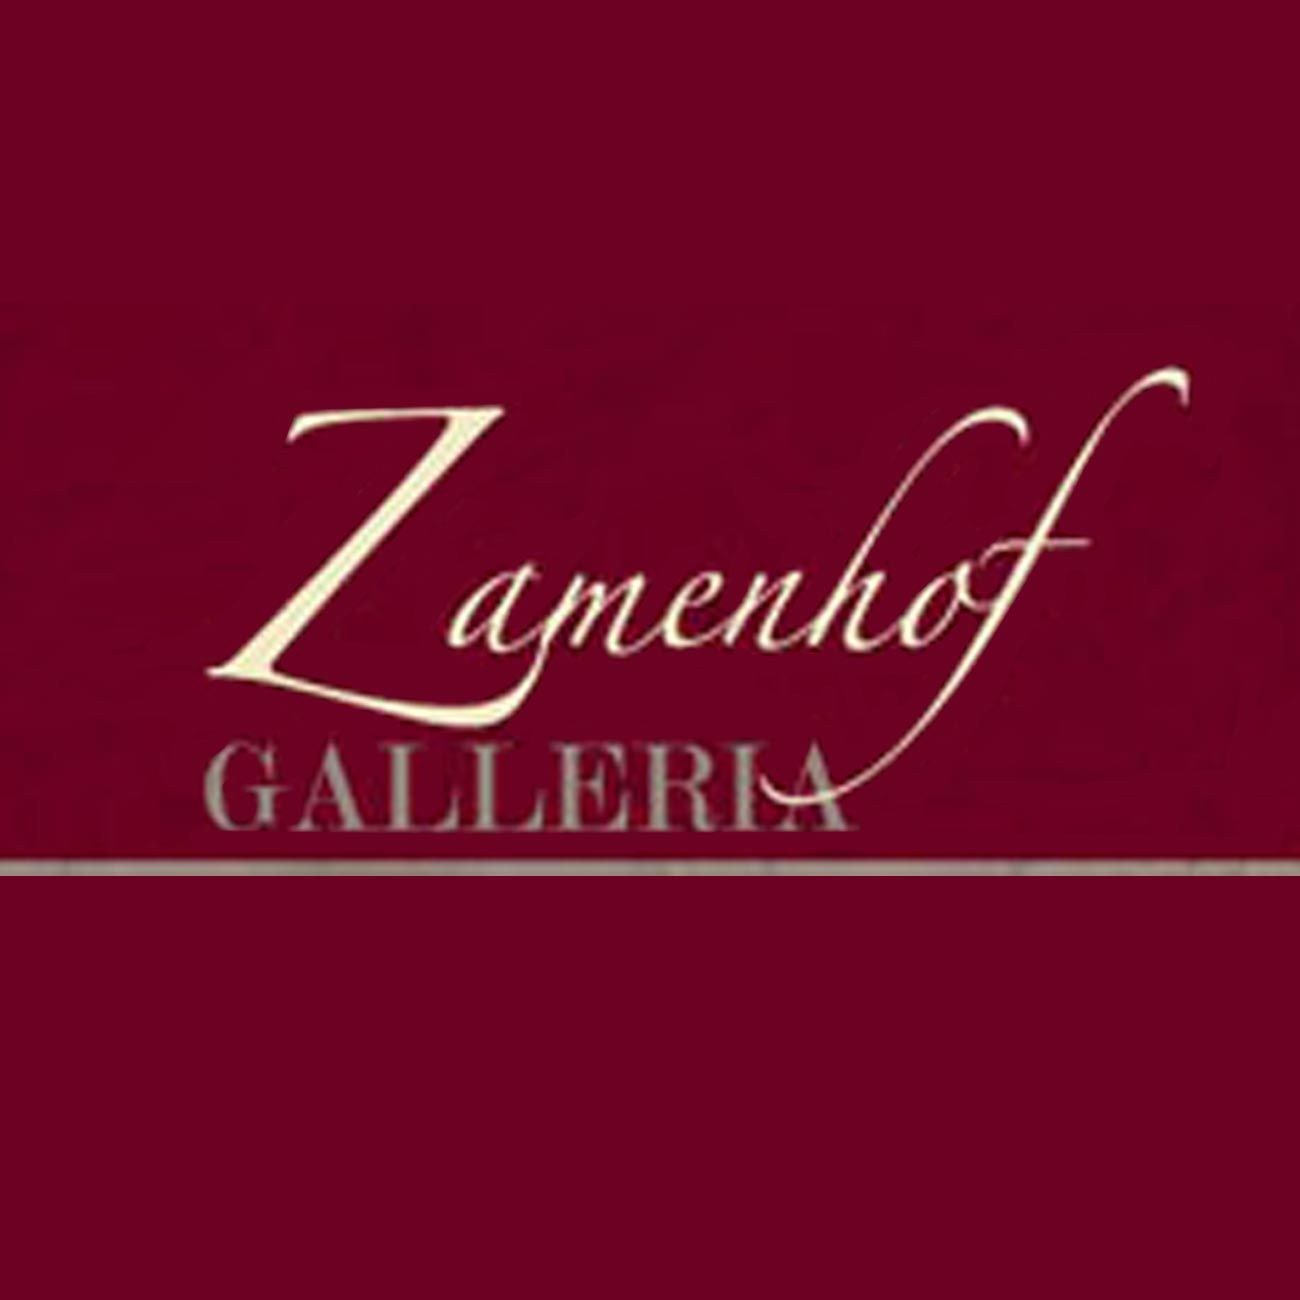 galleria Zamenhof